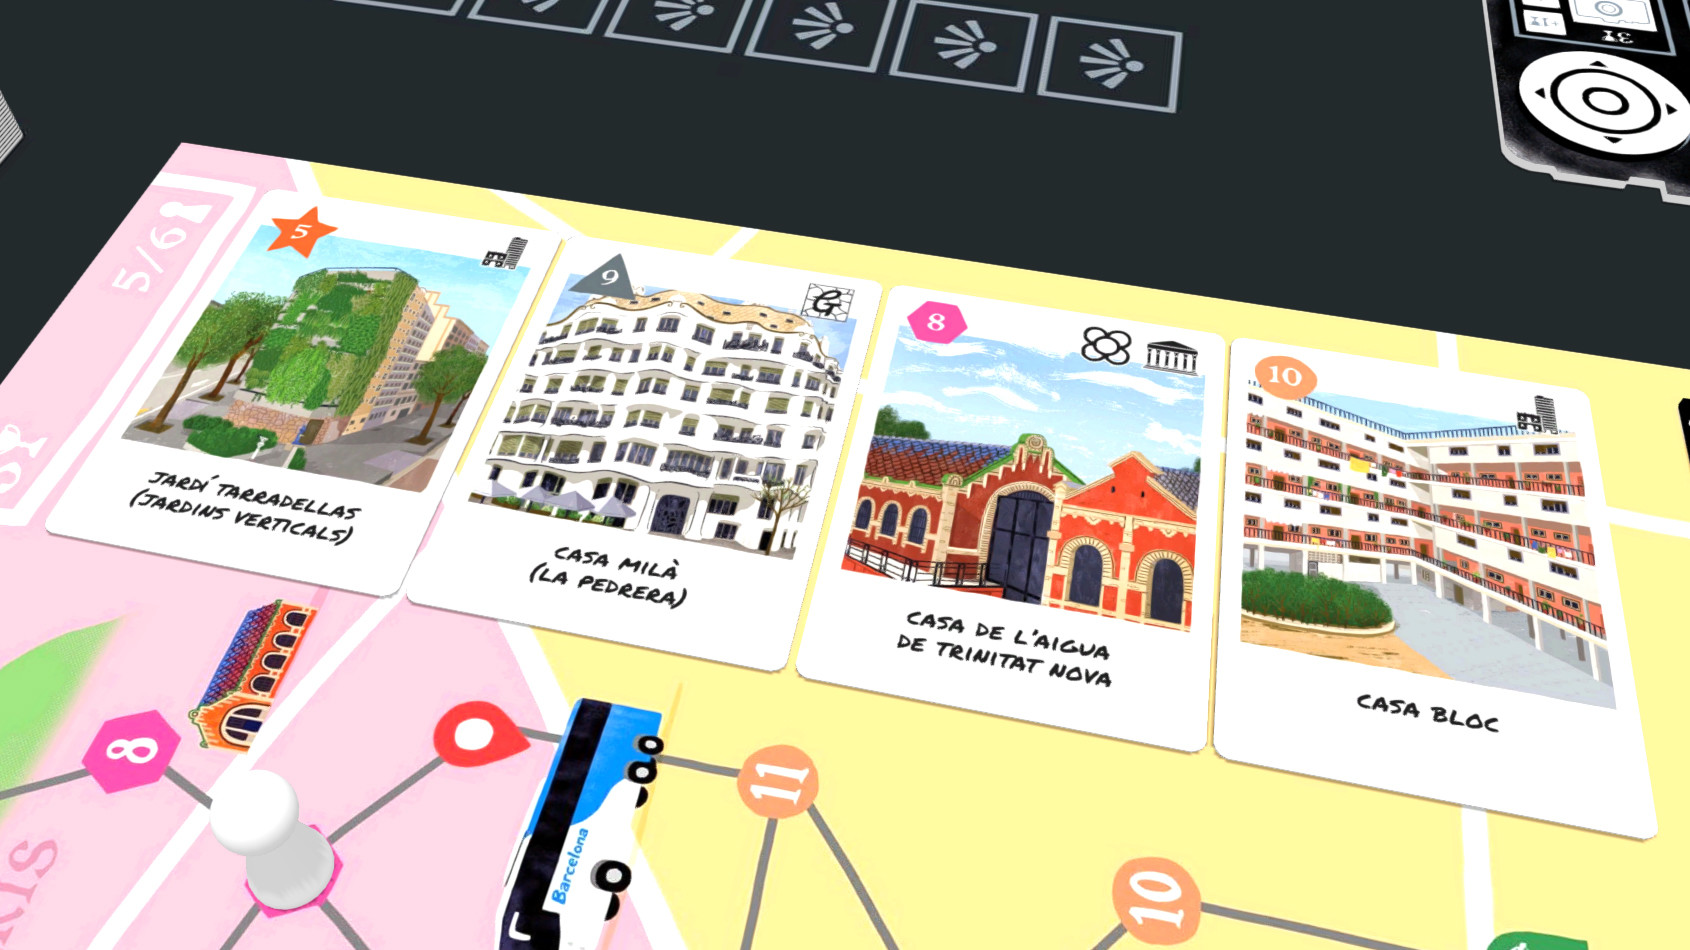 Tabletopia - Zoom In Barcelona screenshot